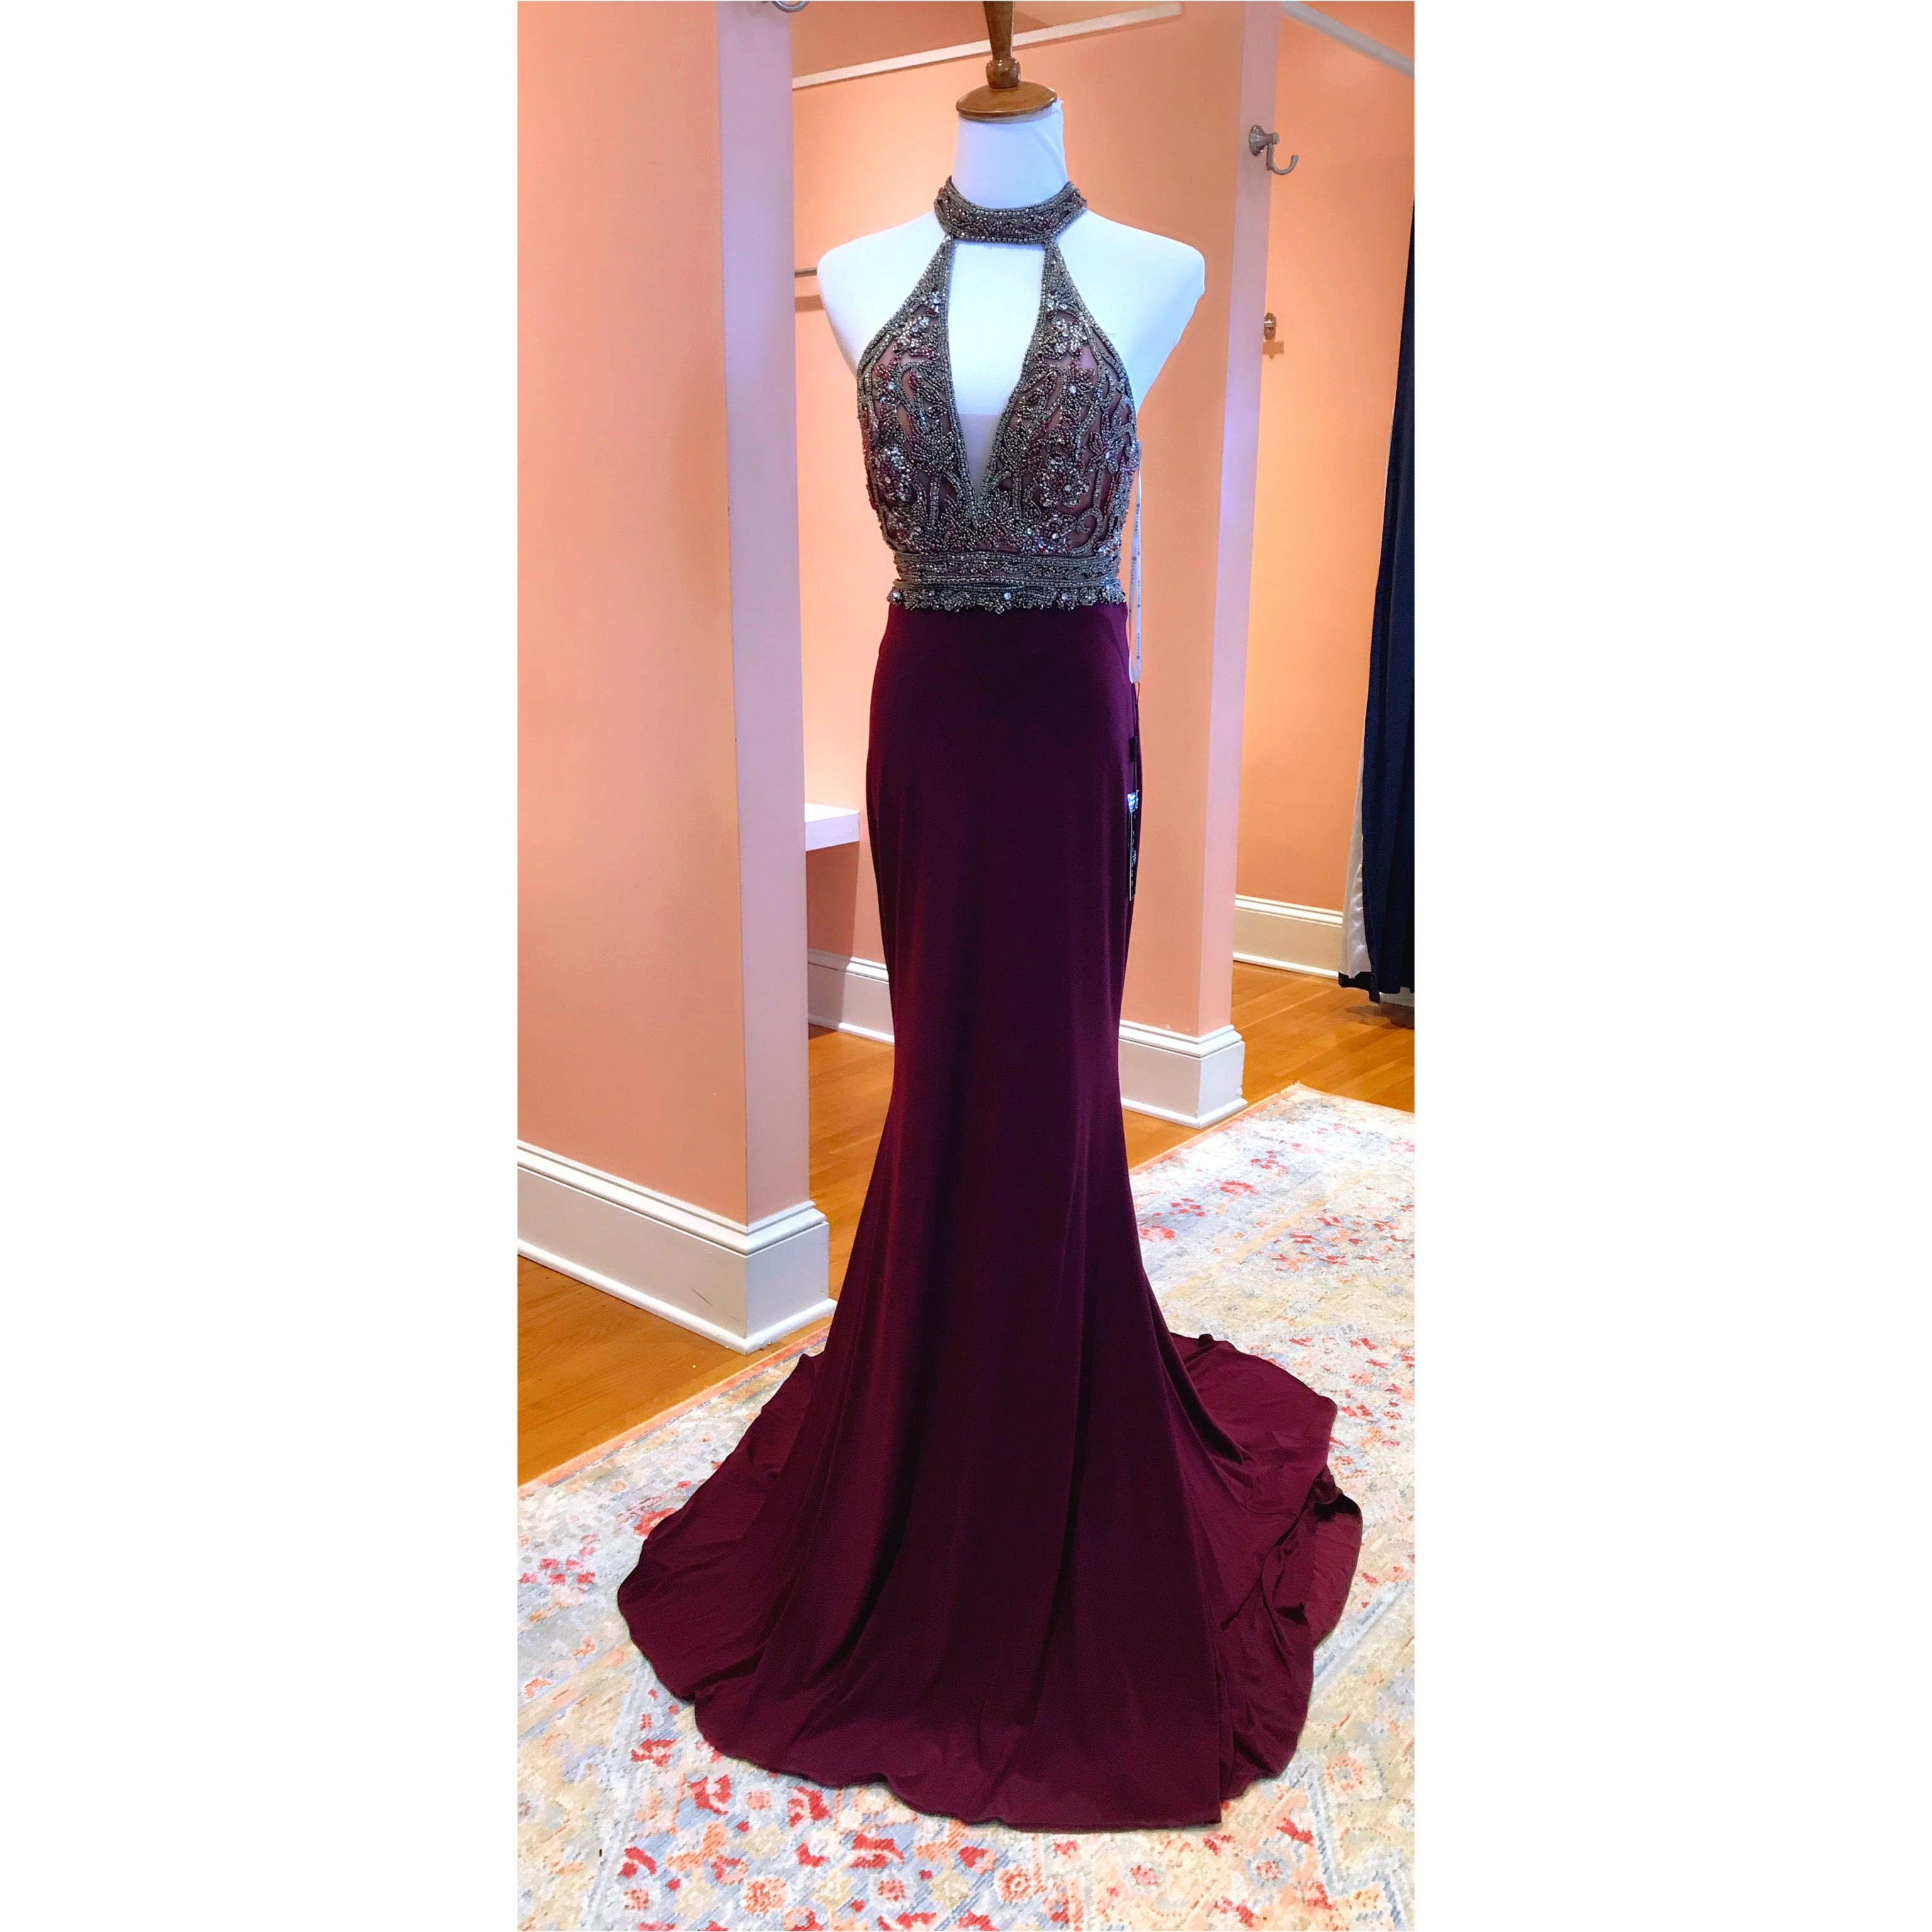 Faviana burgundy 2-piece dress, size 2, NEW WITH TAGS!